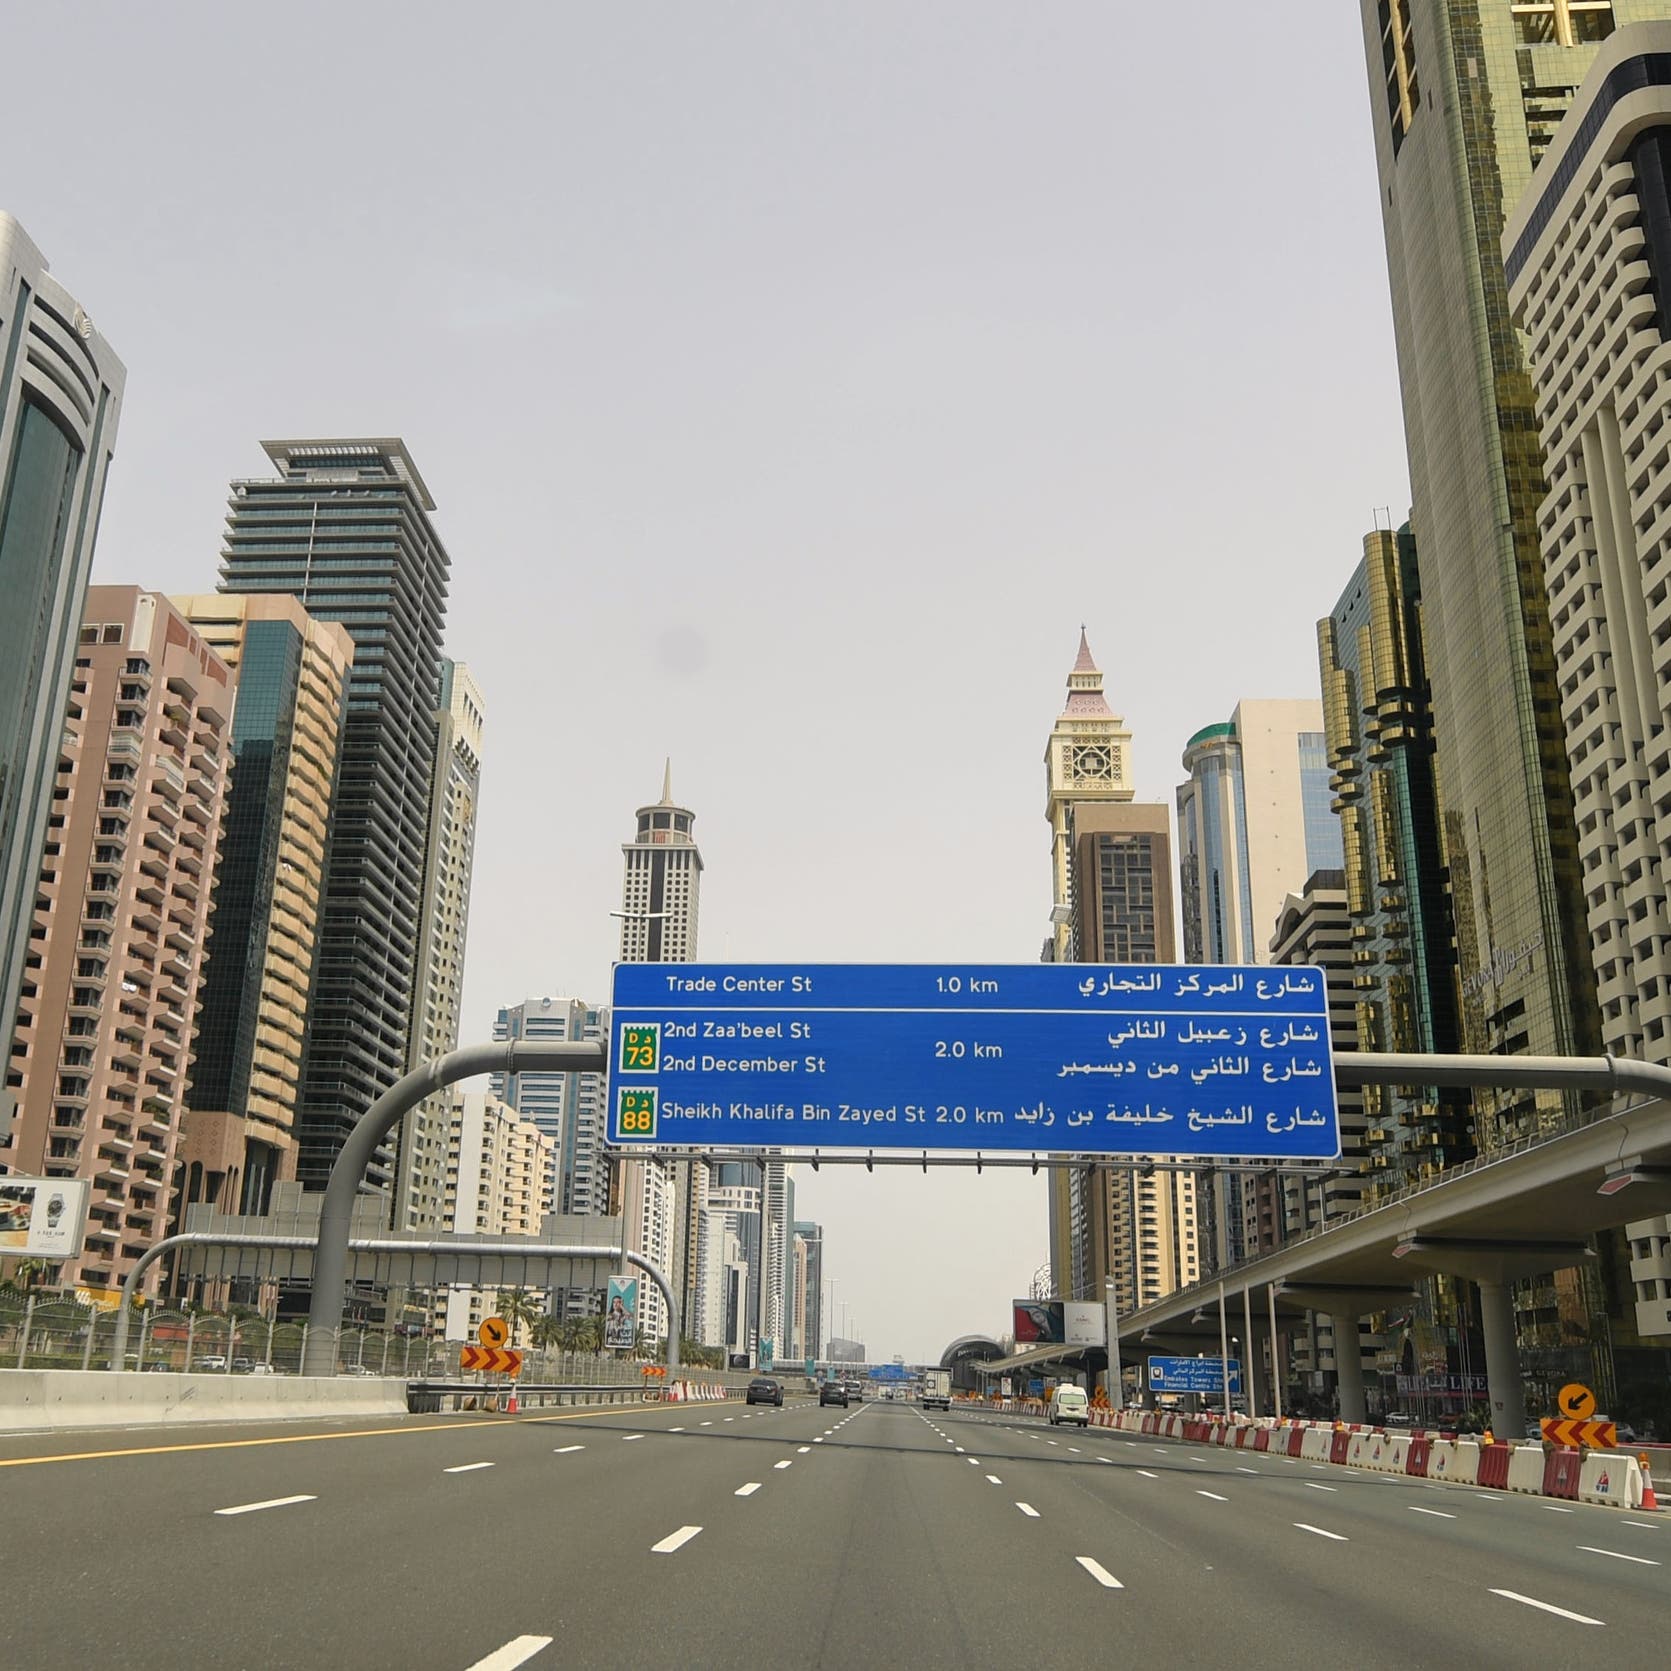 دبي تجمع 1.5 مليار دولار من خلال فتح إصدارات أدوات مالية